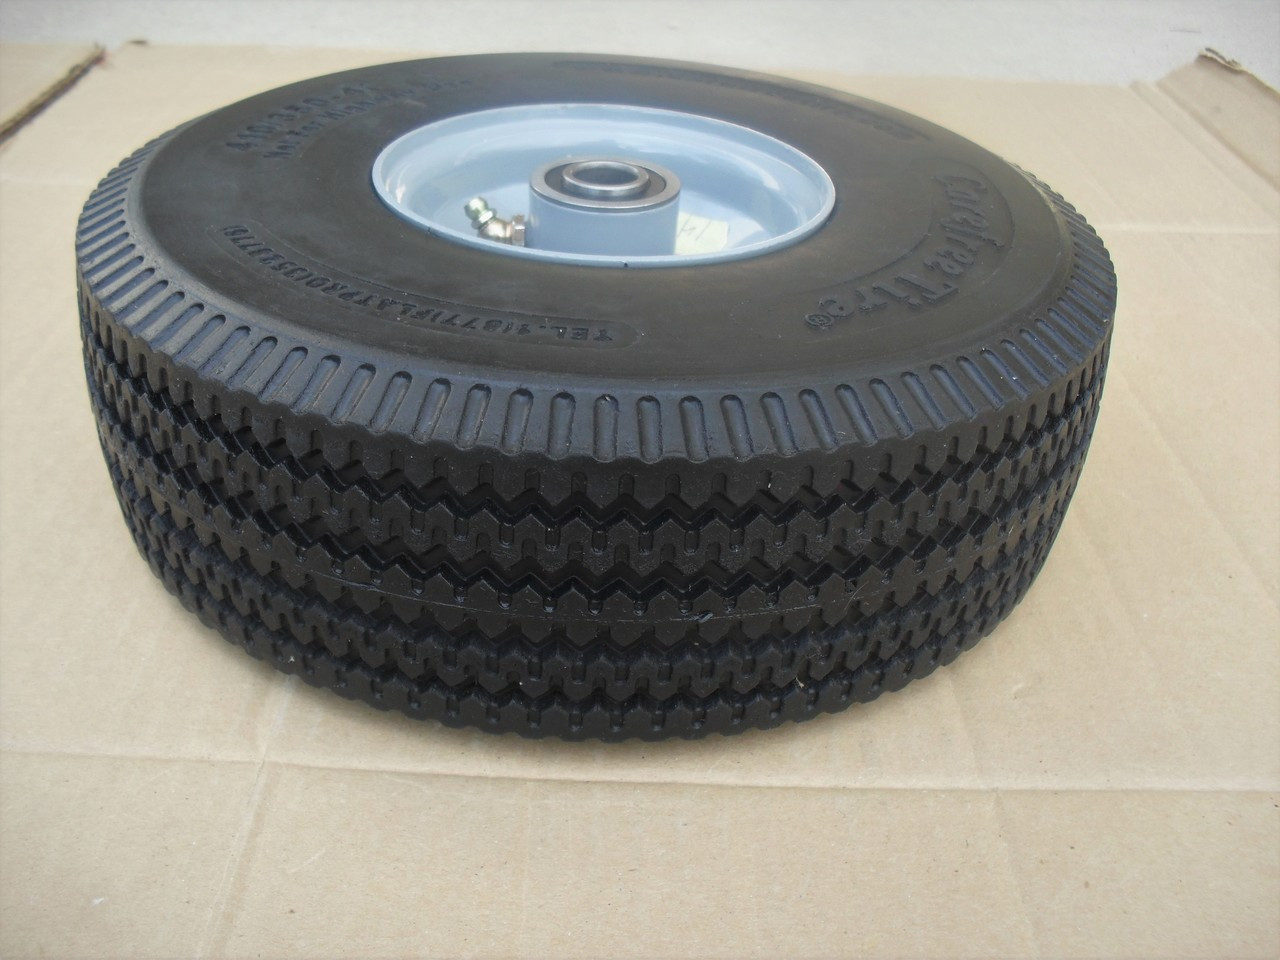 Wheel Tire for Little Wonder Blower 4.10 x 3.50 - 4, 4164205 Solid Foam Flat Free 410/350-4